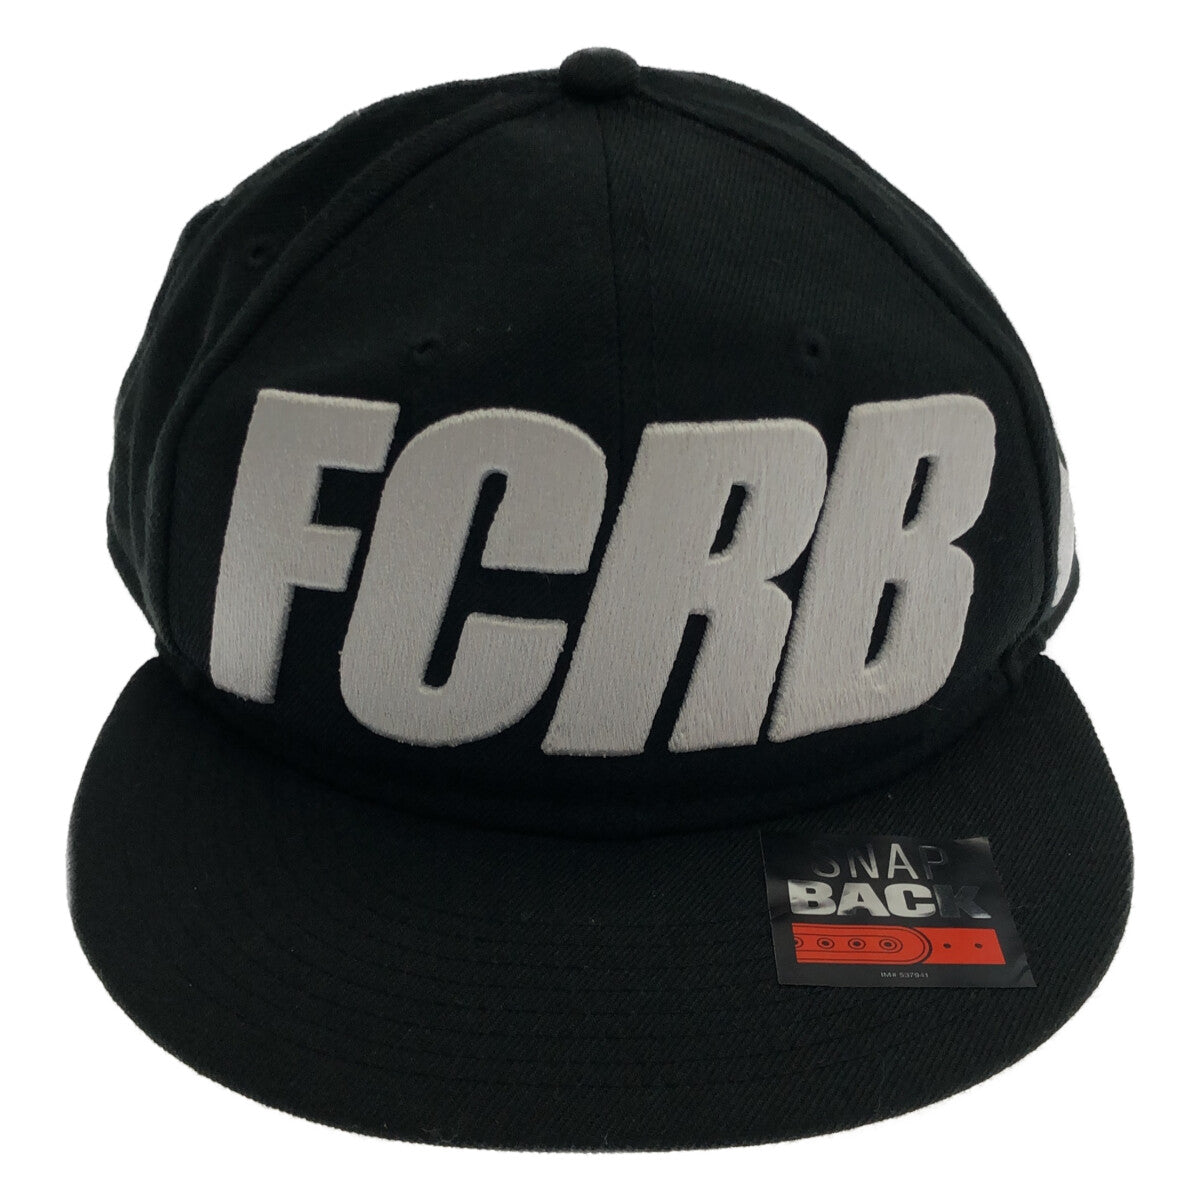 FCRB CAP NIKE